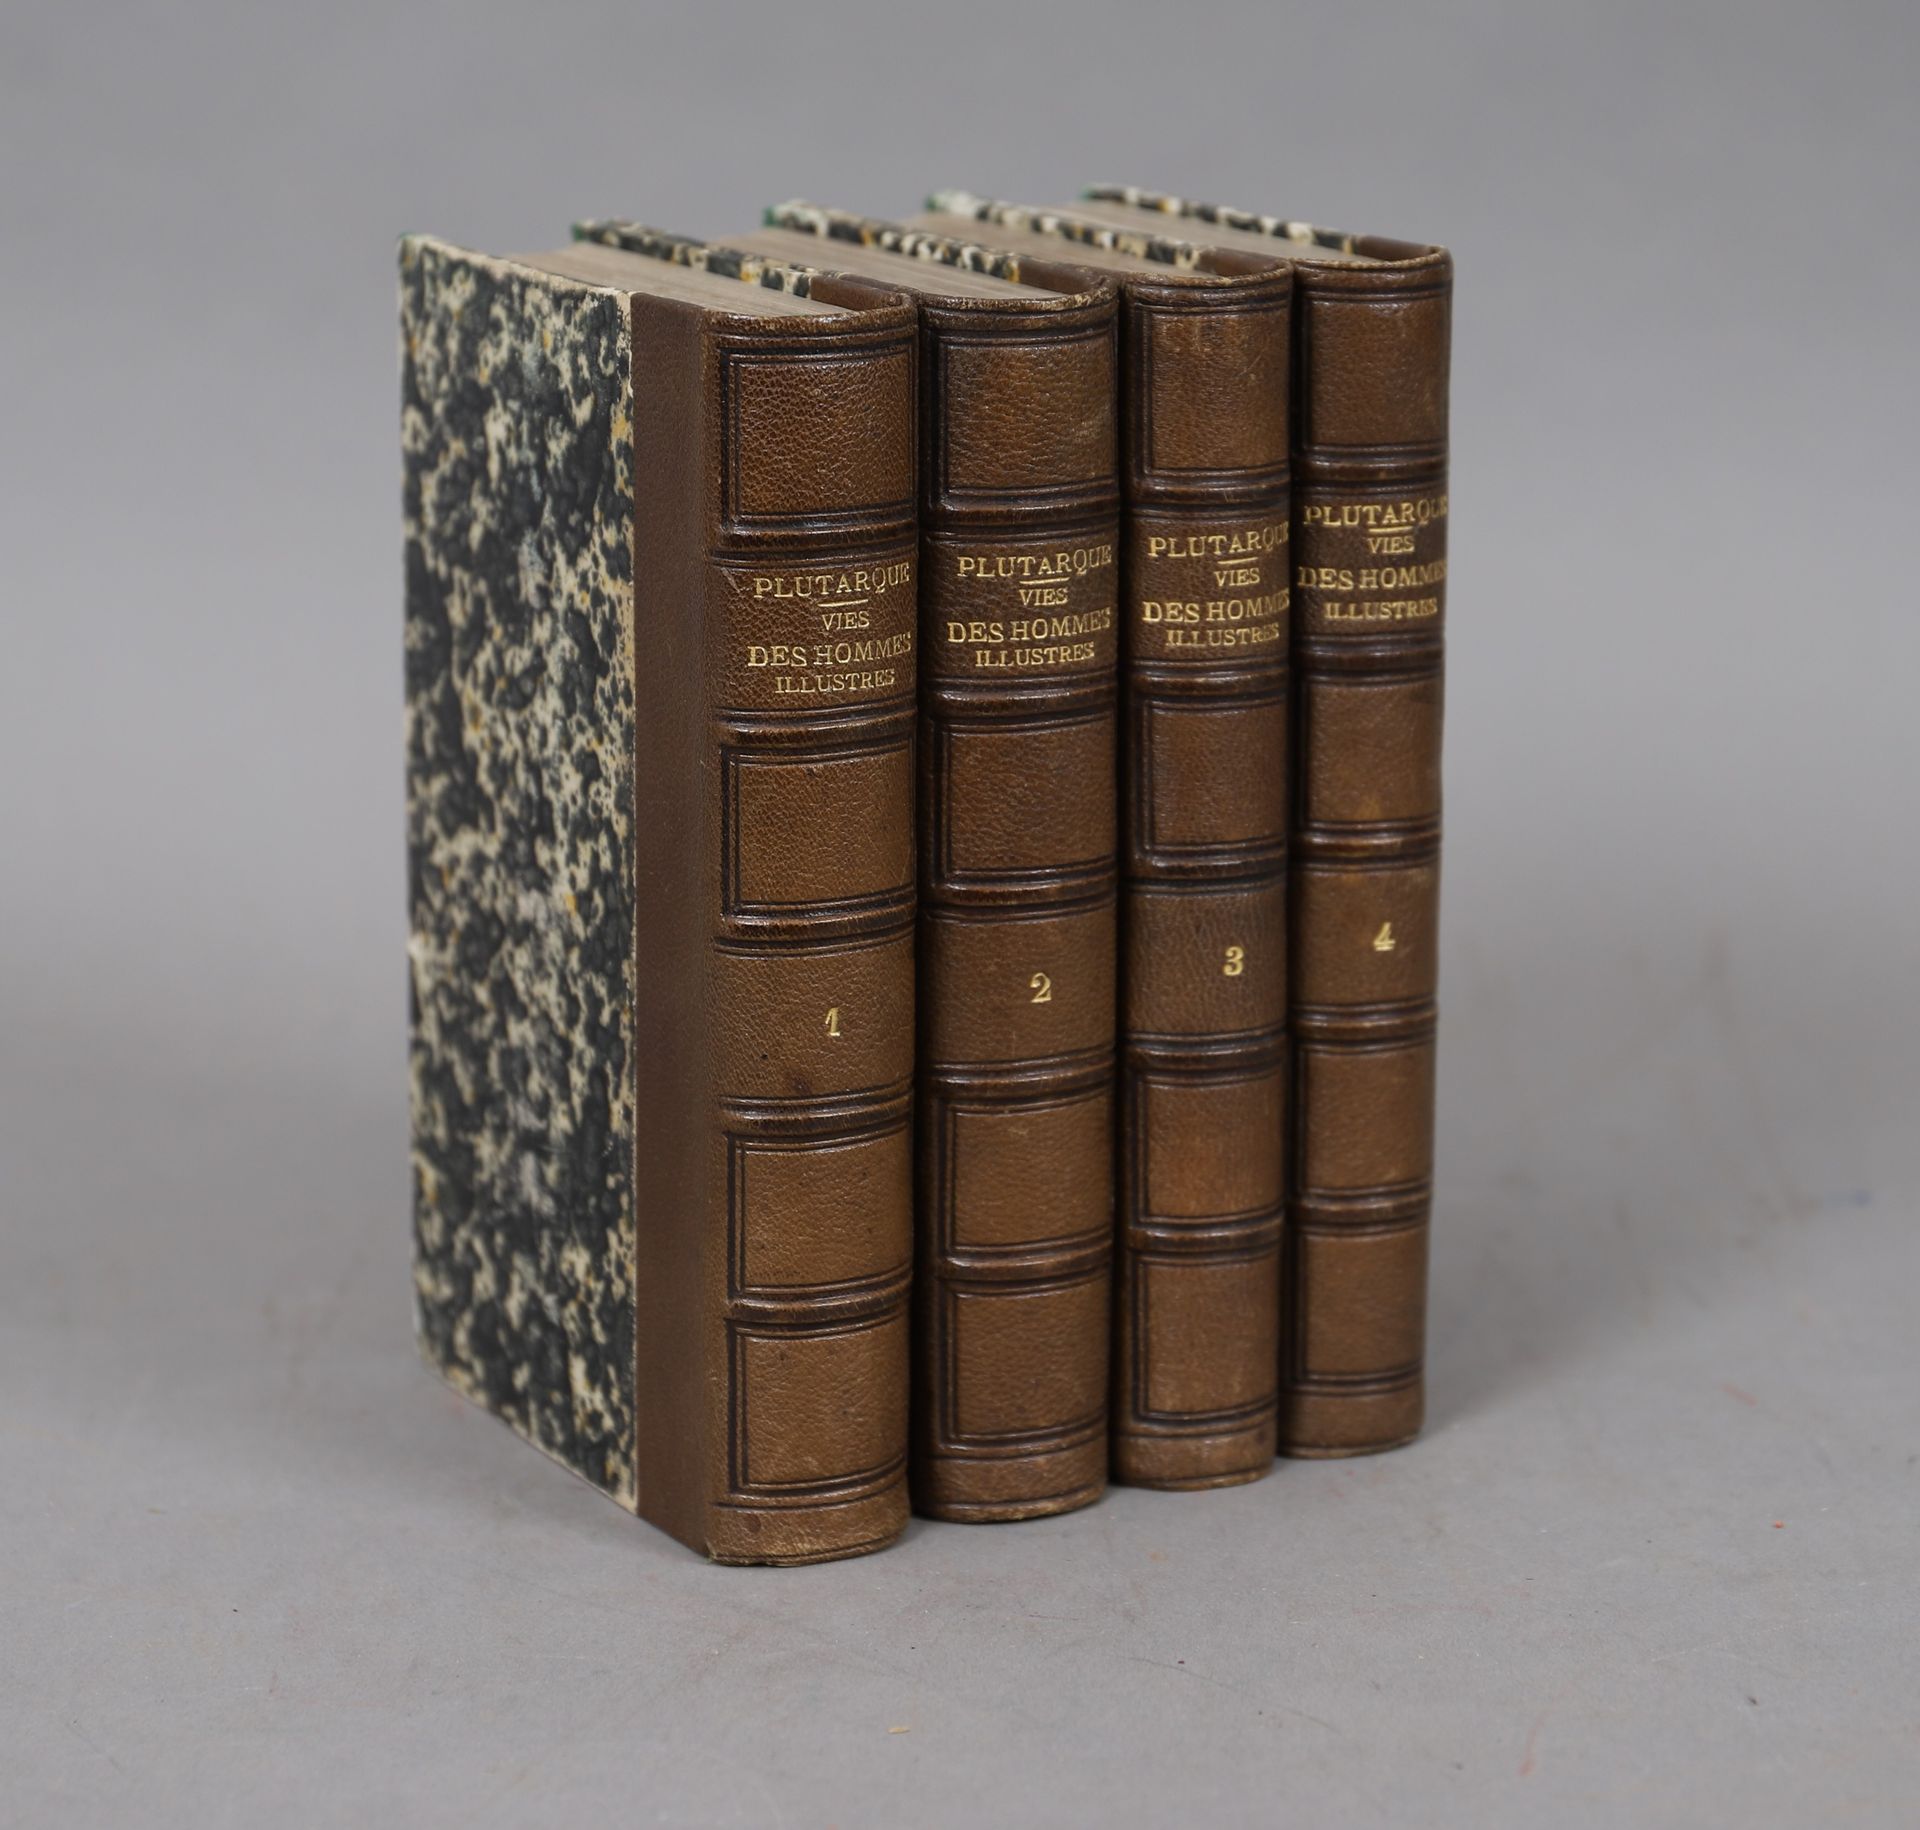 Null PLUTARQUE – VIE des HOMMES ILLUSTRES

4 volumes reliés.

1861